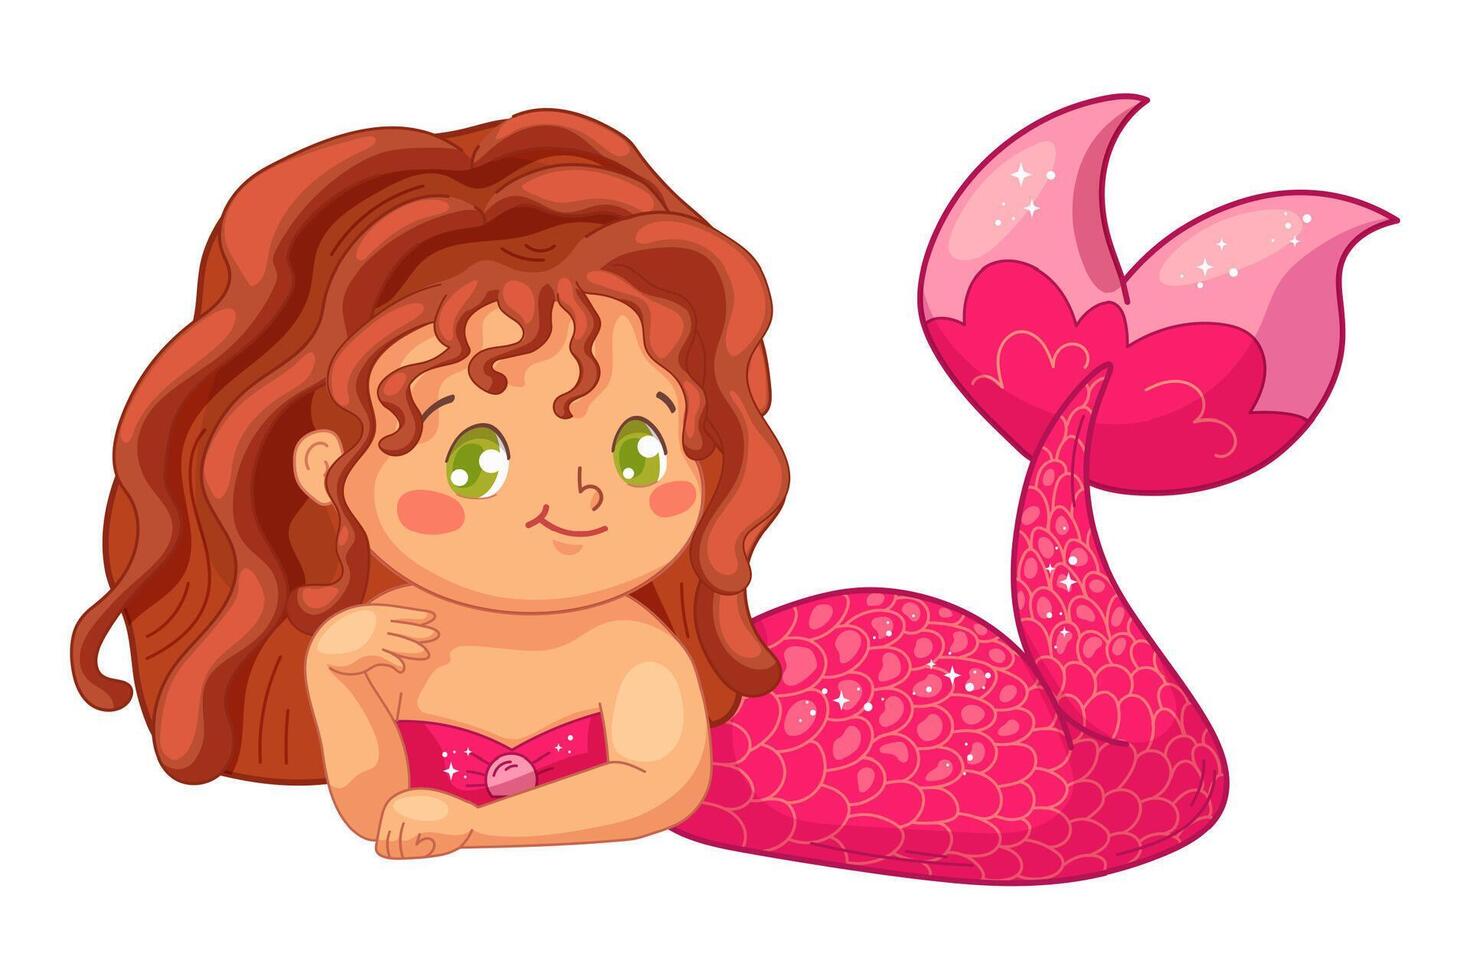 söt svart sjöjungfru med mörk vågig hår och rosa fisksvans. vektor illustration i barnslig stil för bebis dusch, varor, kläder